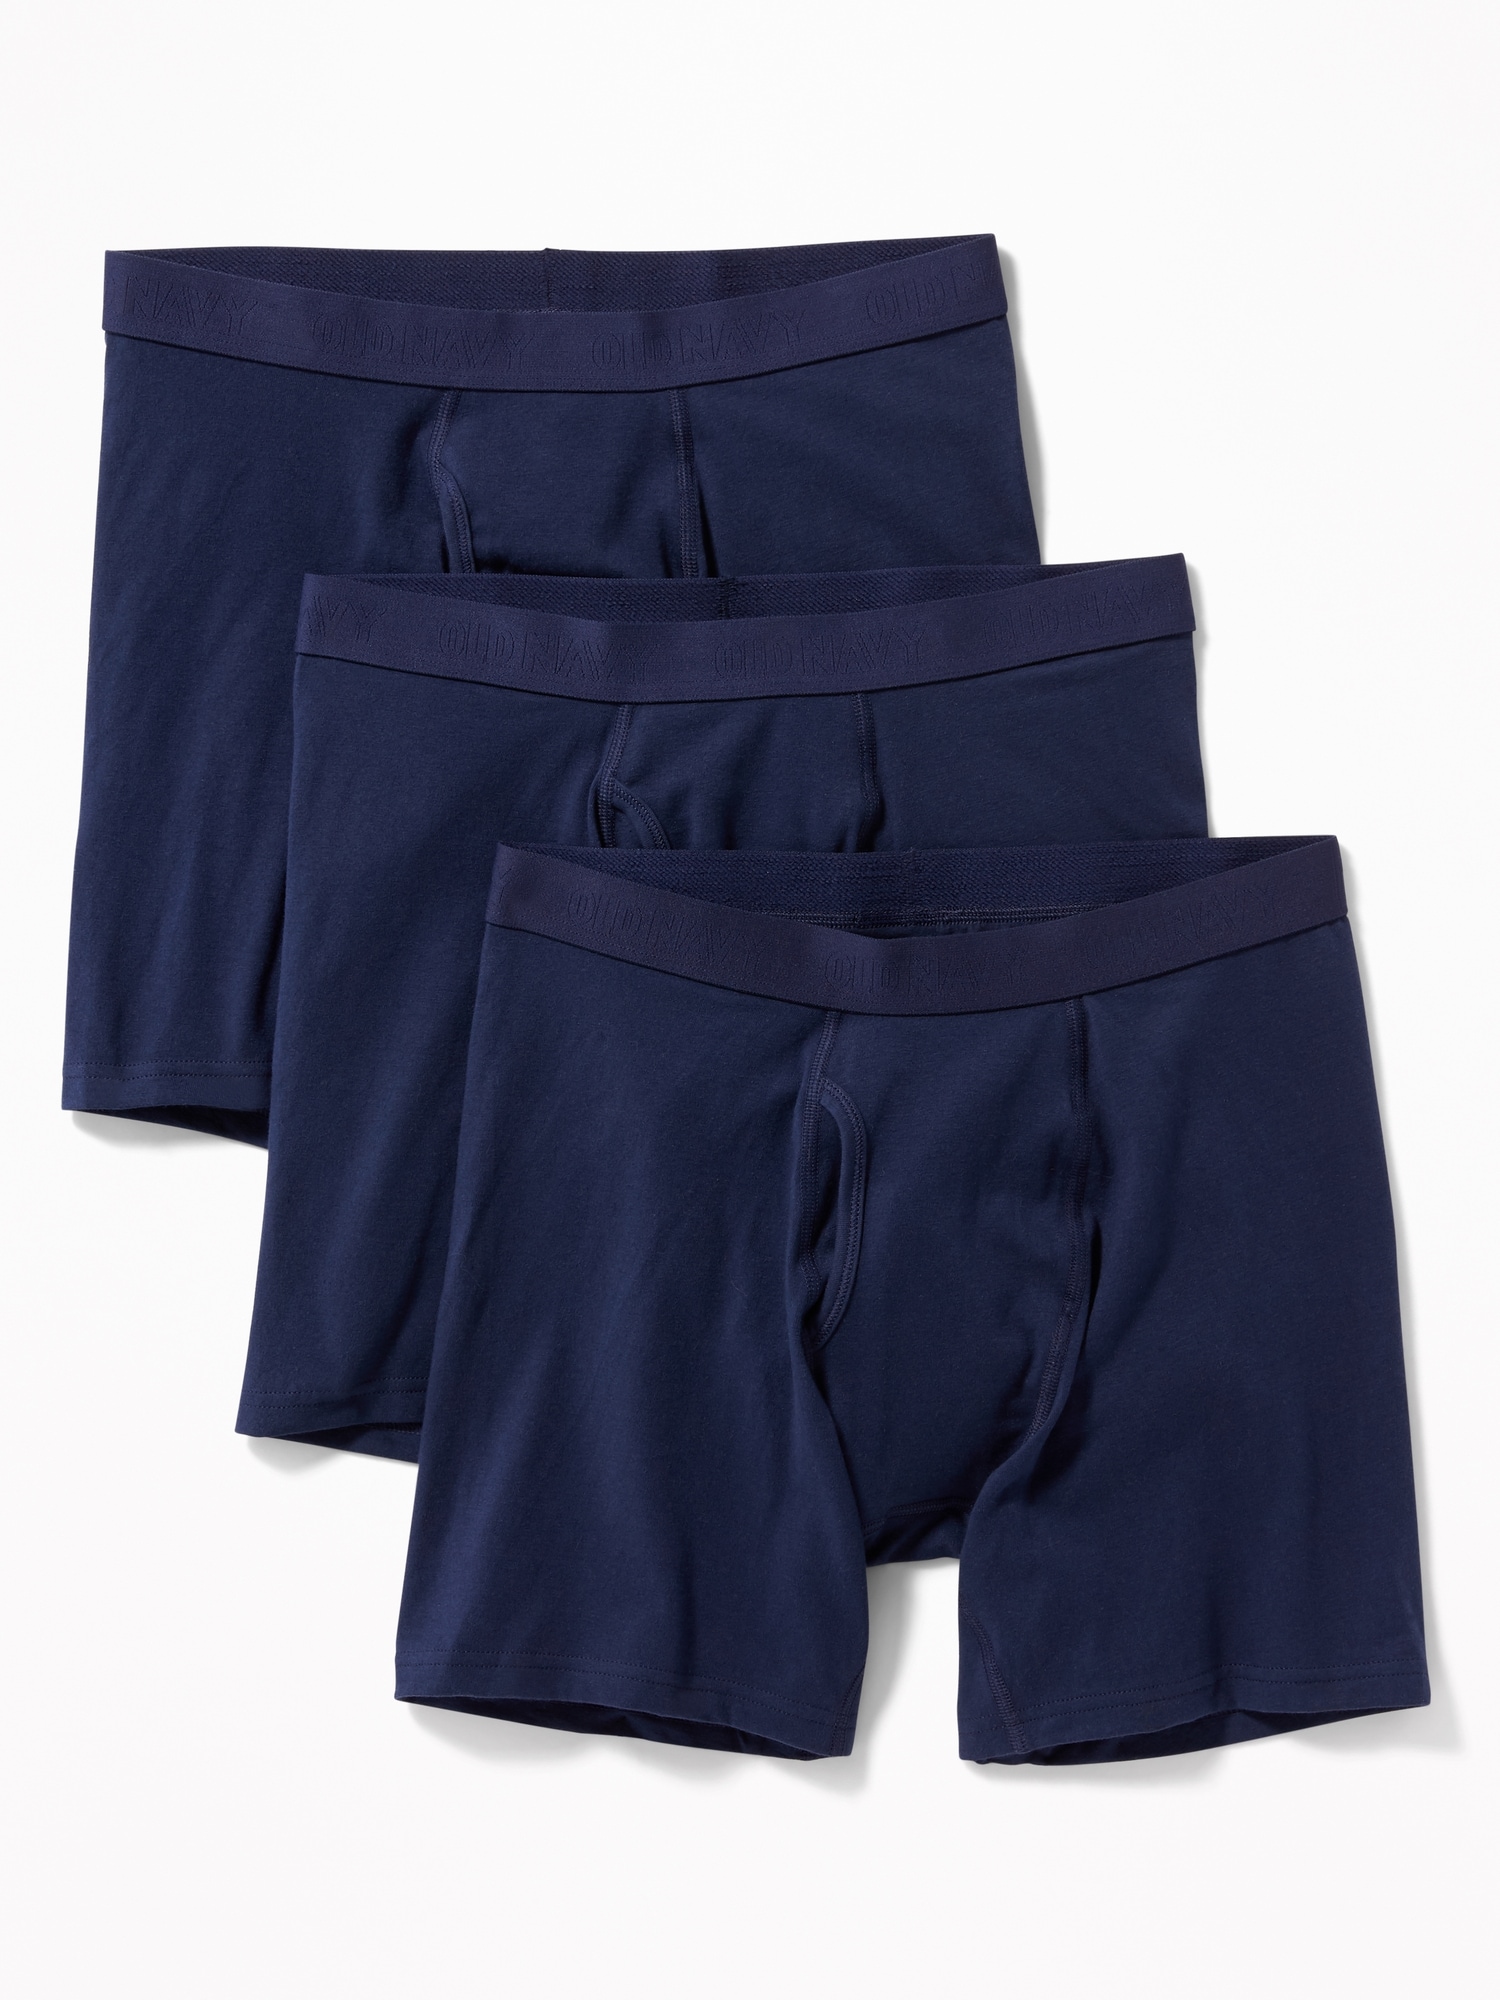 Soft-Washed Built-In Flex Boxer Briefs Underwear 3-Pack for Men -- 6.25 ...